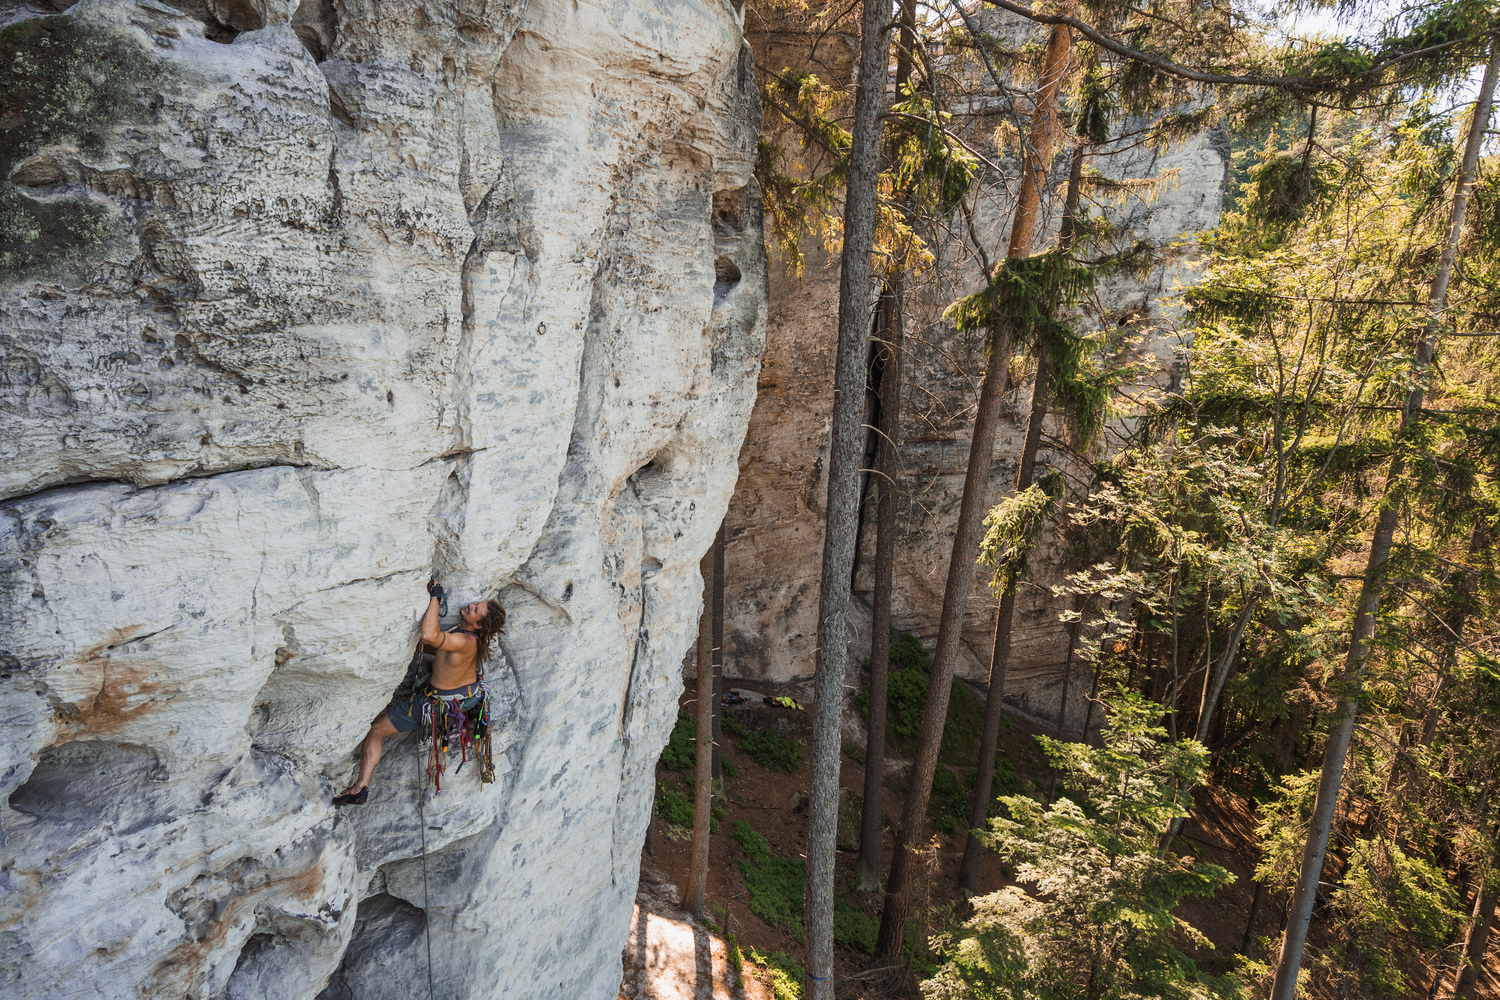 Rock climbing in the Czech Republic